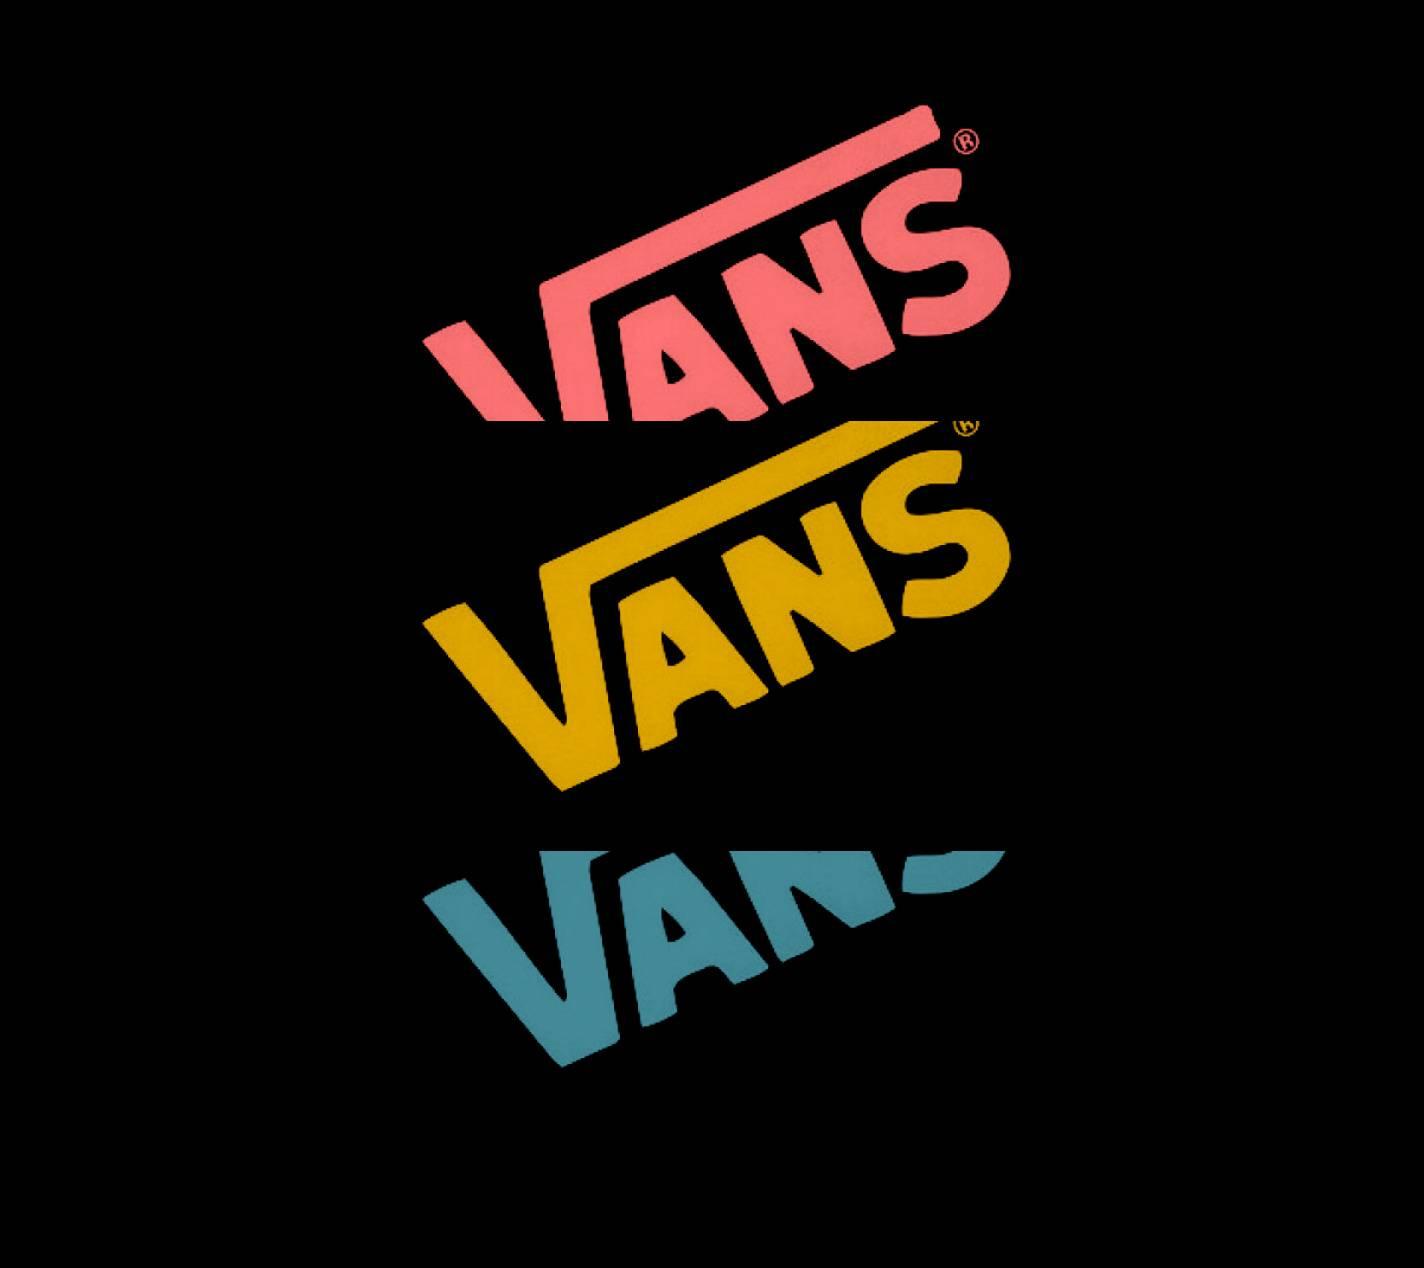 Vans Wallpaper Hd Download